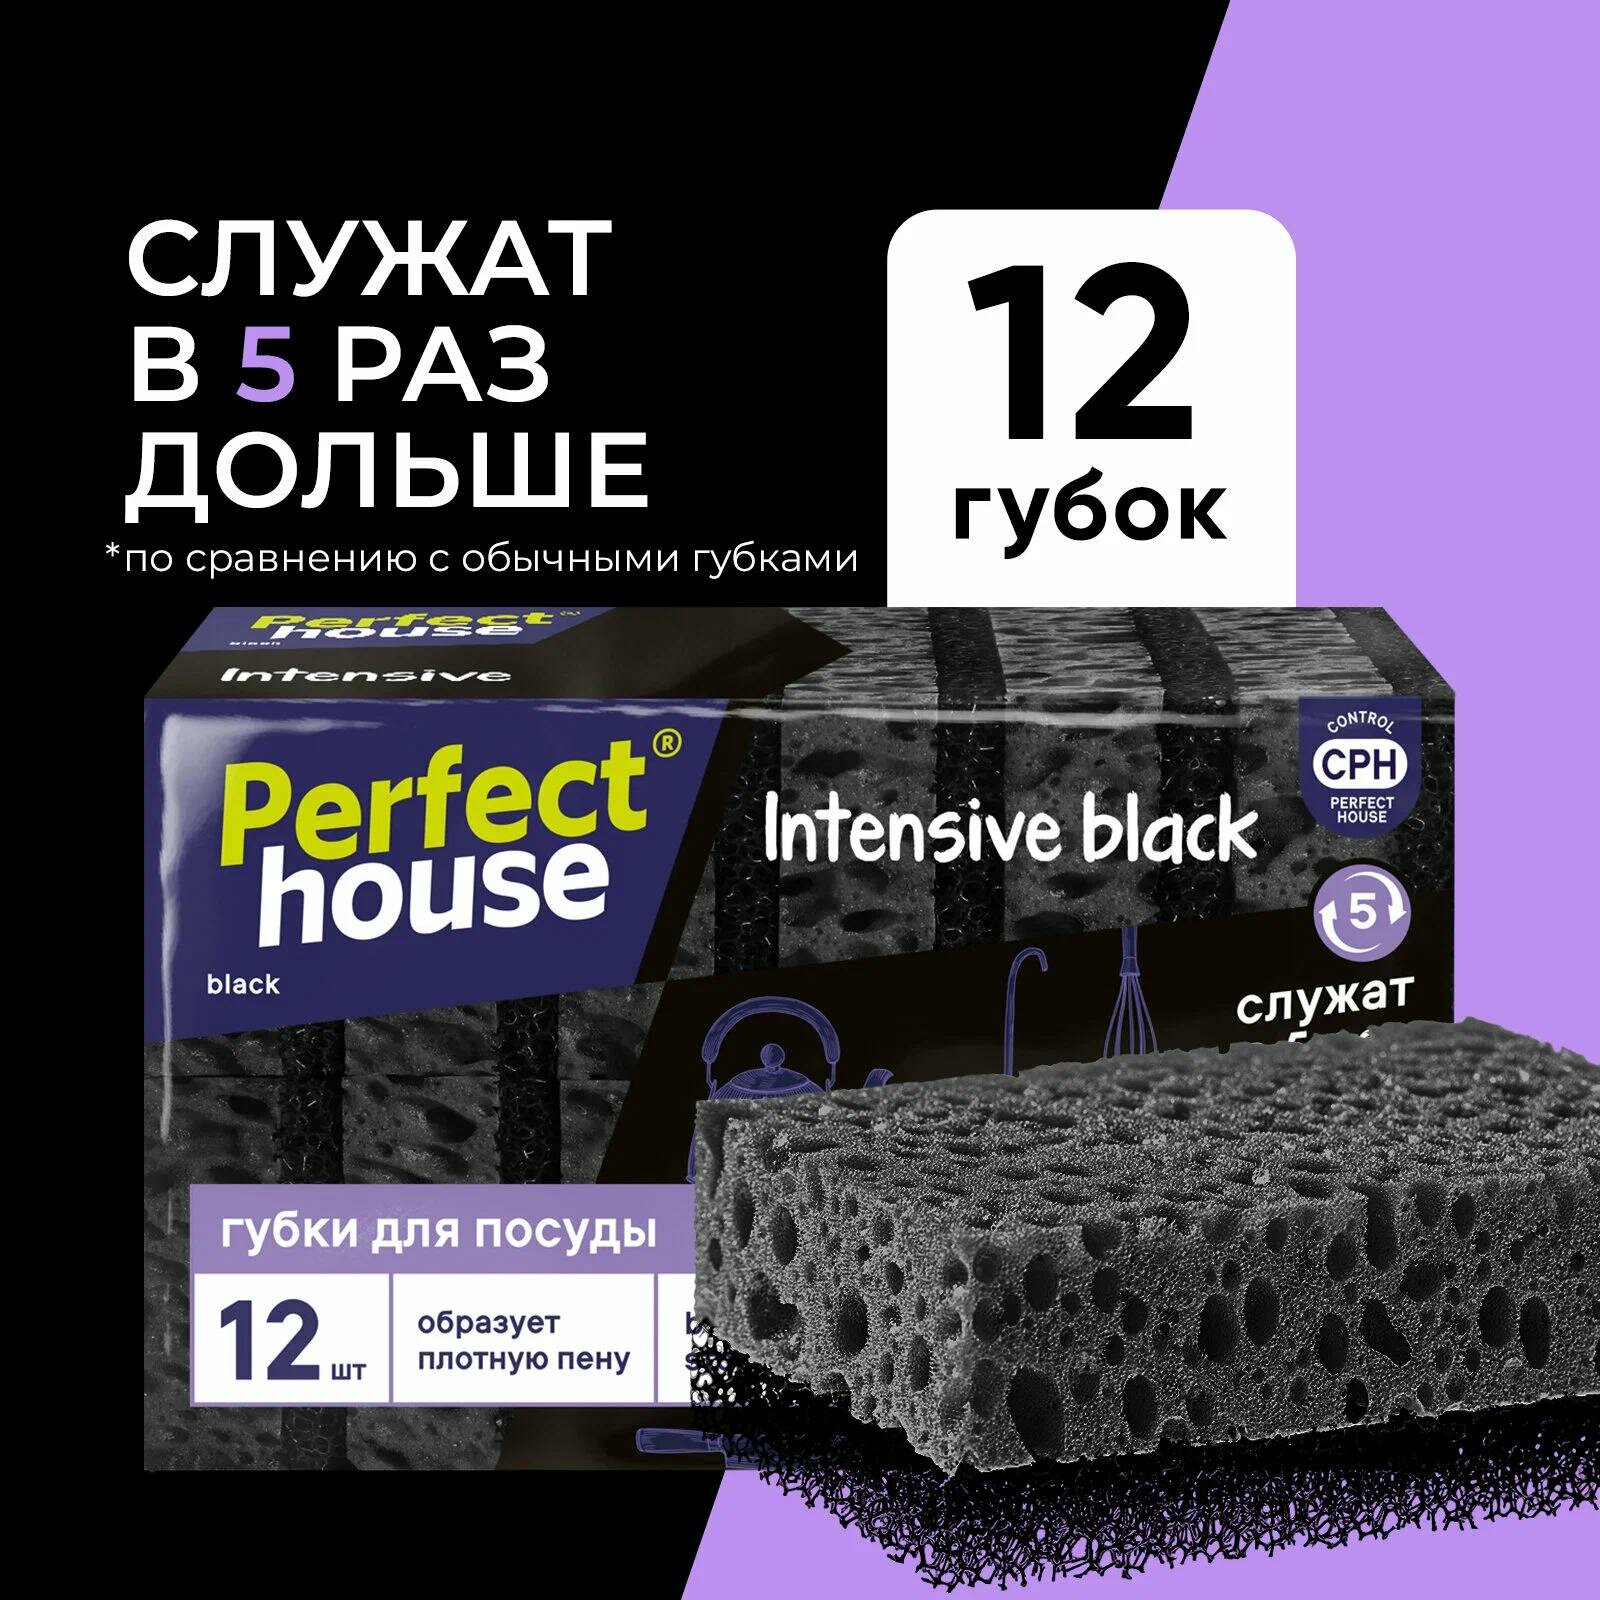 Губки для посуды Perfect House Intensive black 12 шт